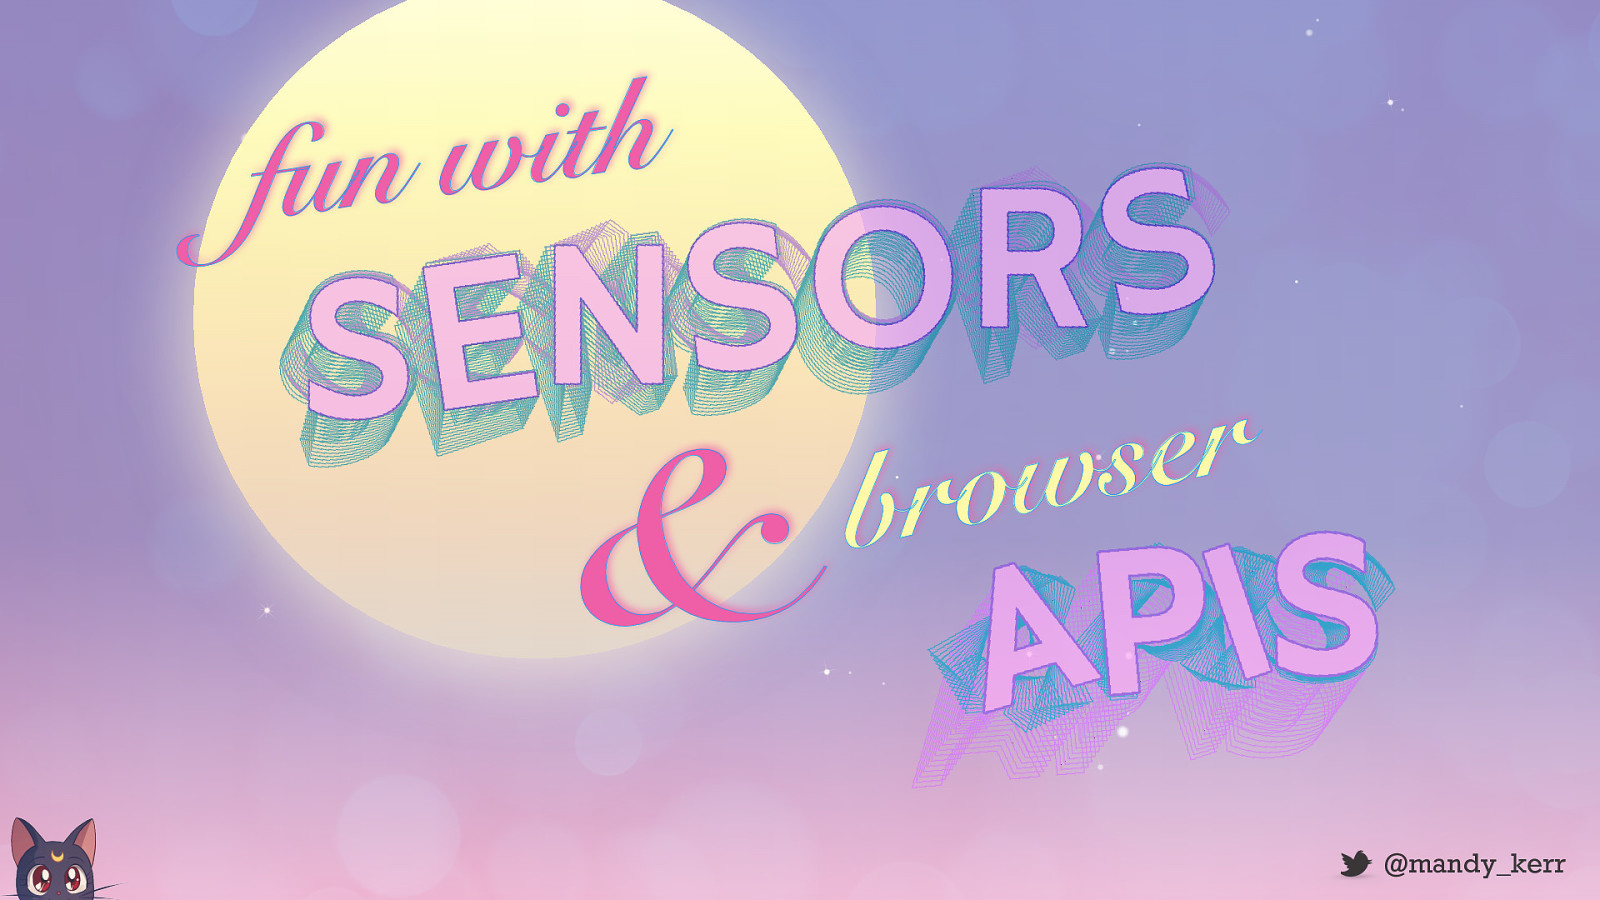 Fun with Browser and Sensor APIS